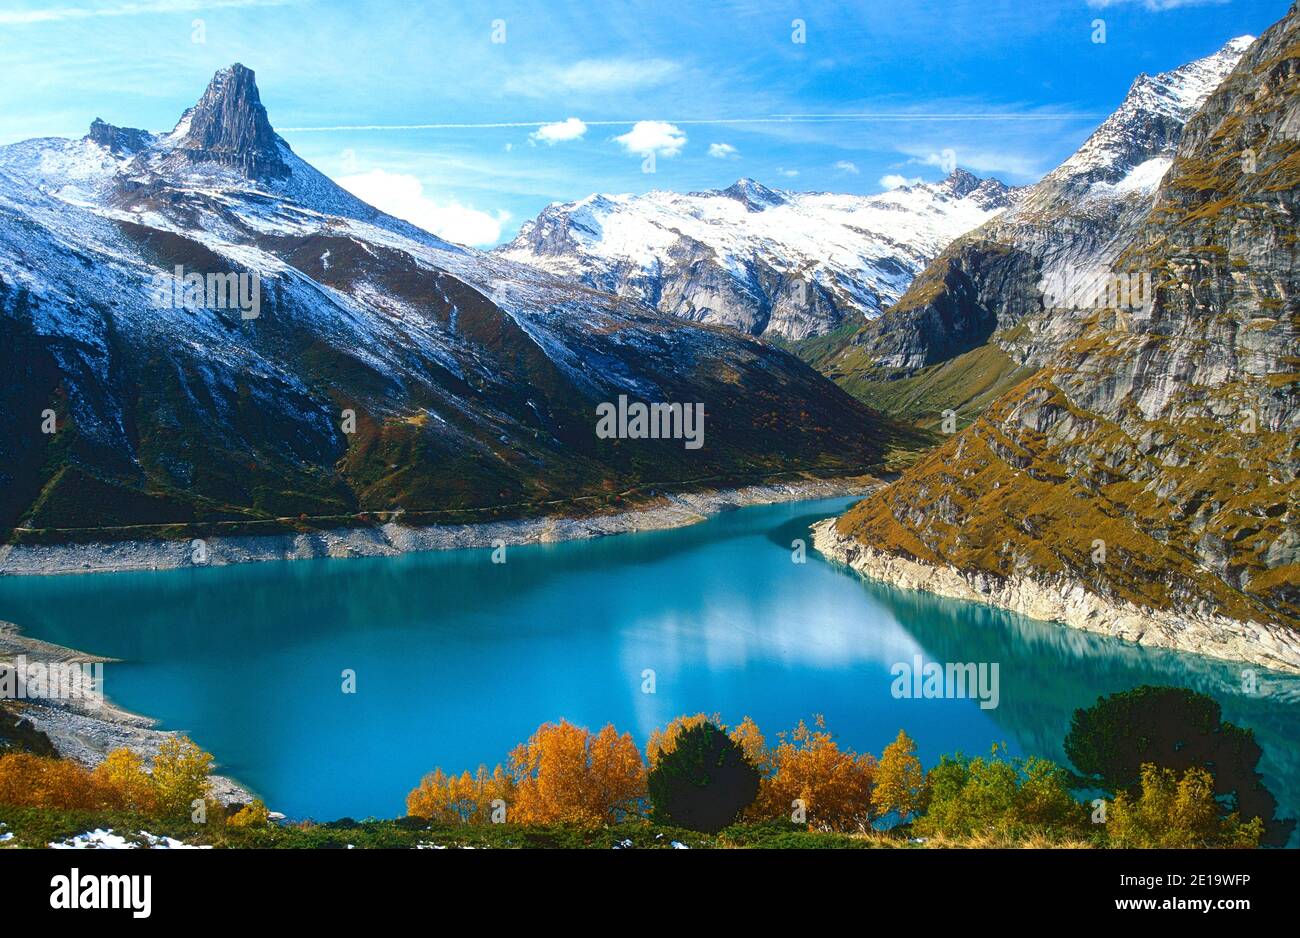 Lac, Zervreililasee, barrage, montagnes, Zervreilihorn, T. di Gorzora, neige, couleurs automnales, Alpes, Canton de Grisons, Suisse Banque D'Images